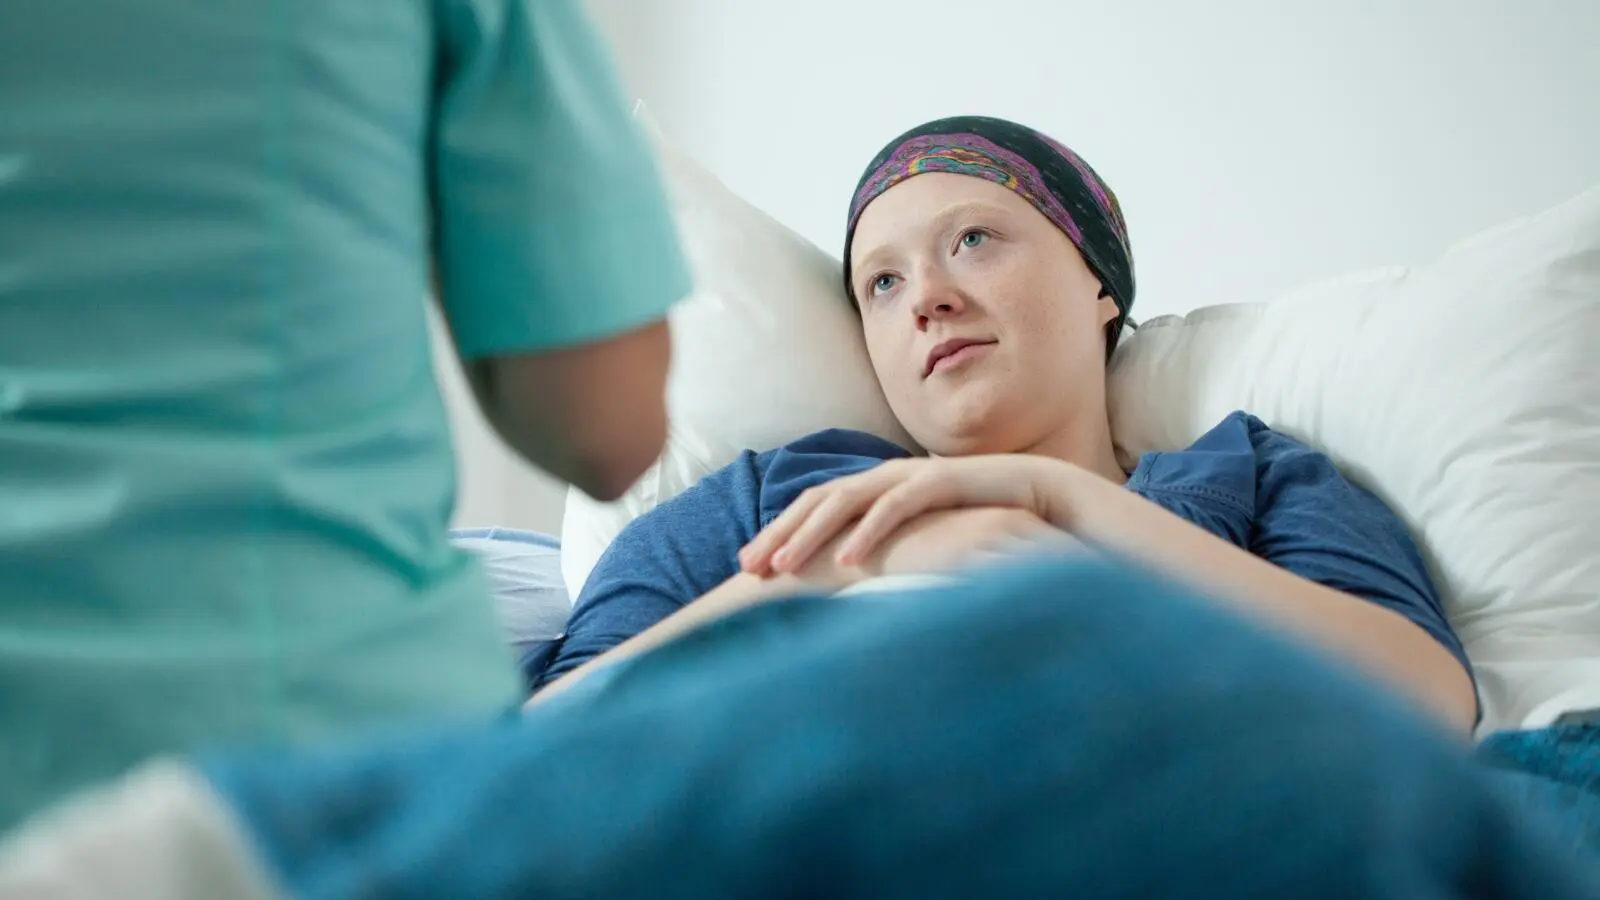  رؤية مرض السرطان الخبيث في المنام - تفسير الاحلام اون لاين